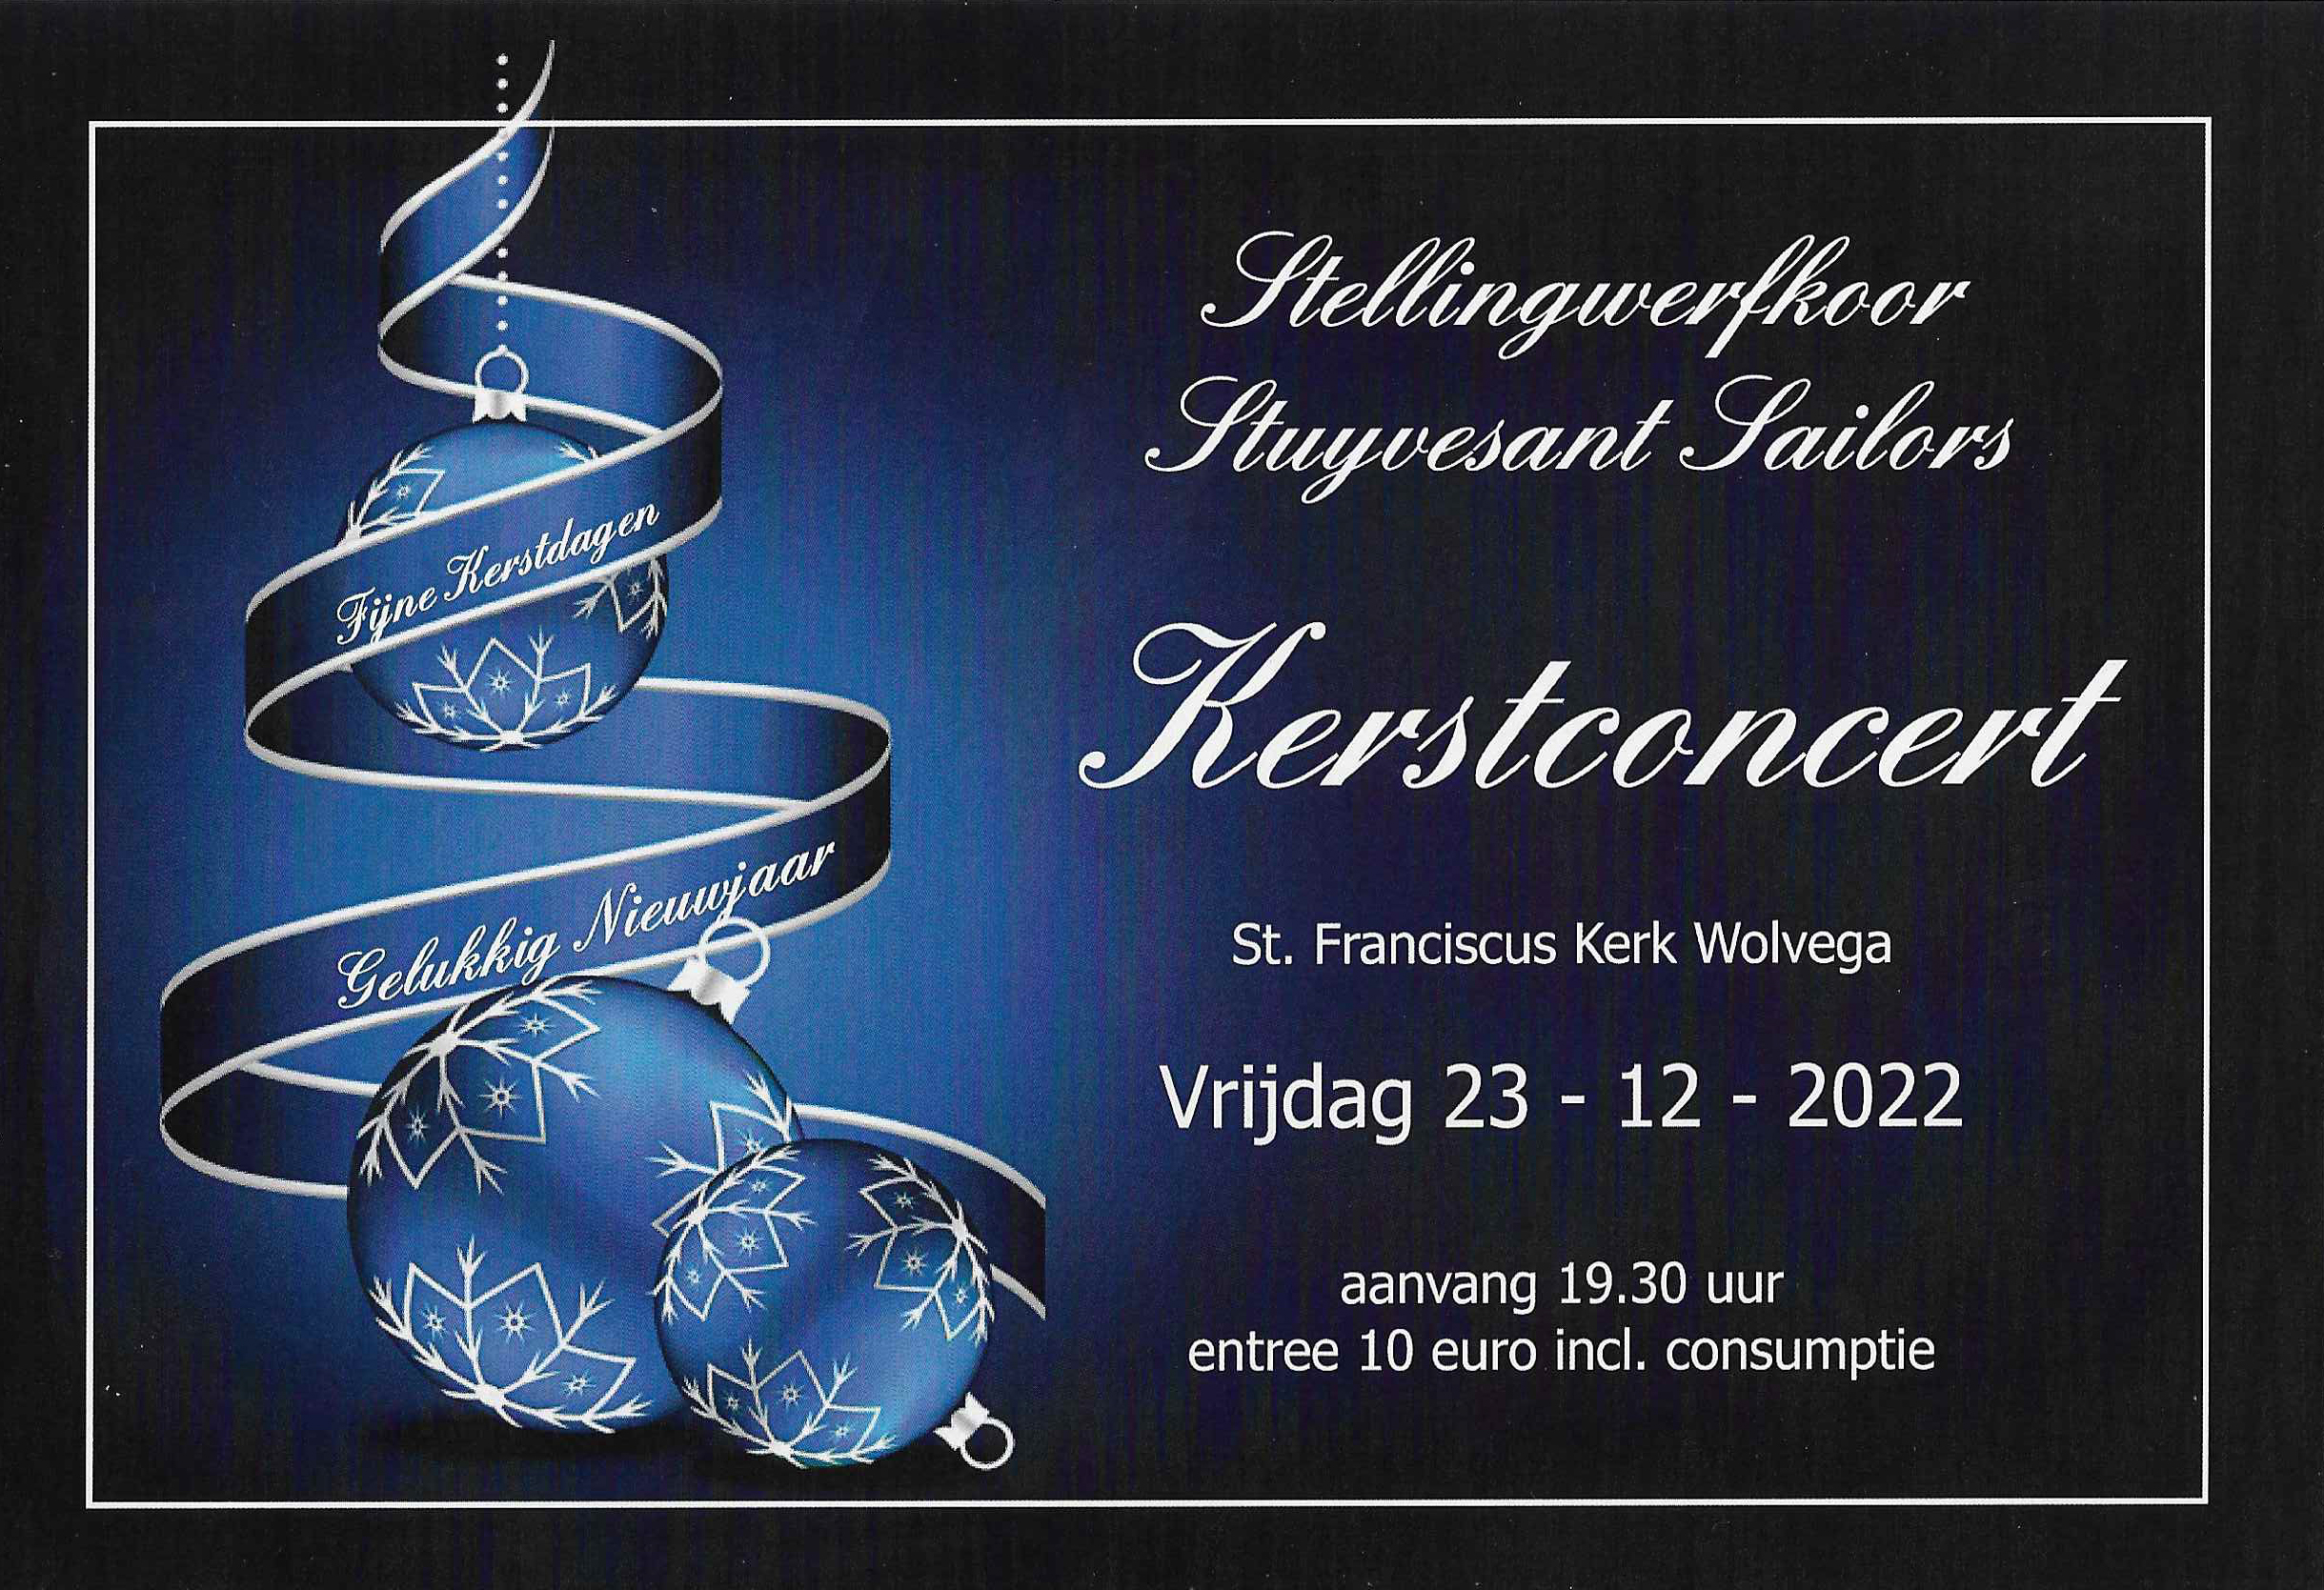 Aankondiging kerstconcert Stuyvesant Sailors  Stellingwerfkoor